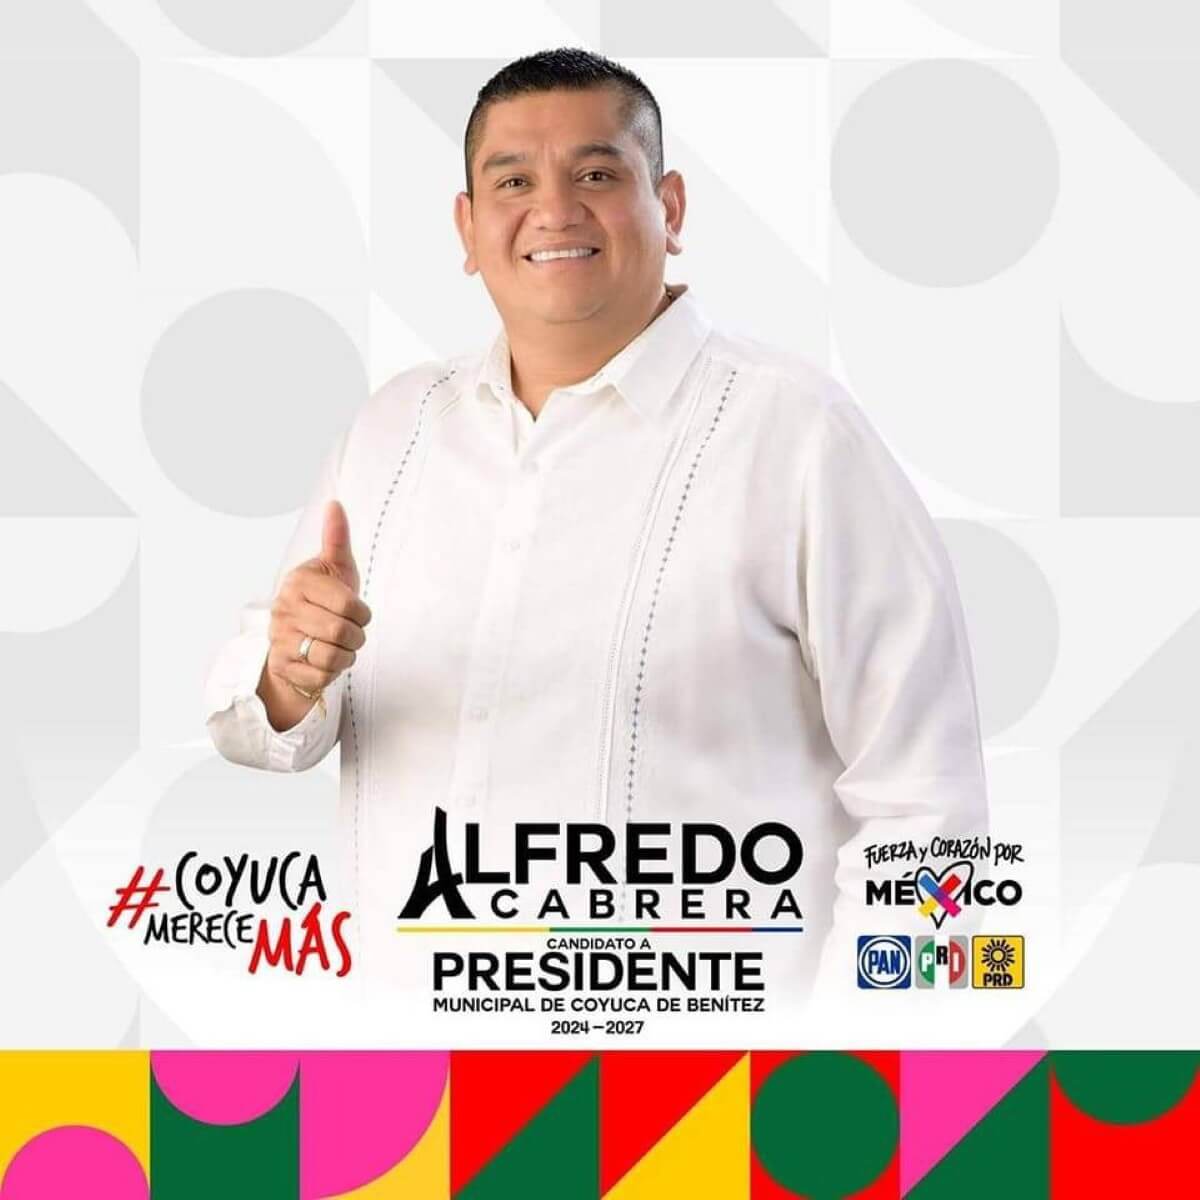 El candidato José Alfredo Cabrera Barrientos para la alcaldía del municipio de Coyuca de Benítez en Guerrero